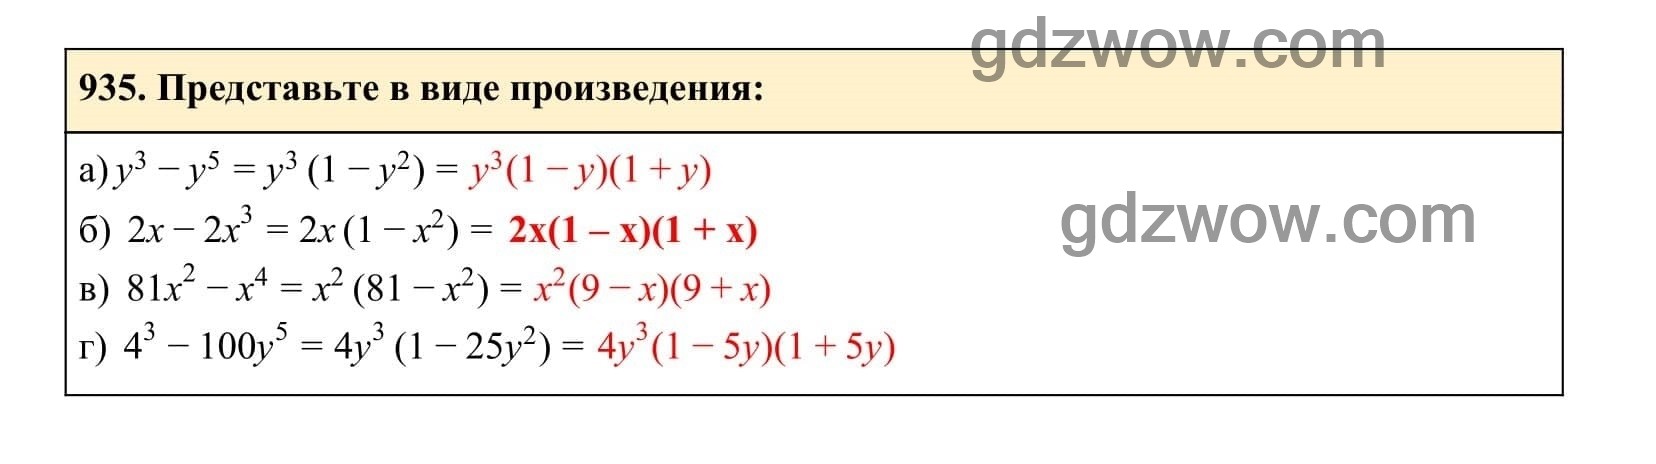 Упражнение 935 - ГДЗ по Алгебре 7 класс Учебник Макарычев (решебник) - GDZwow